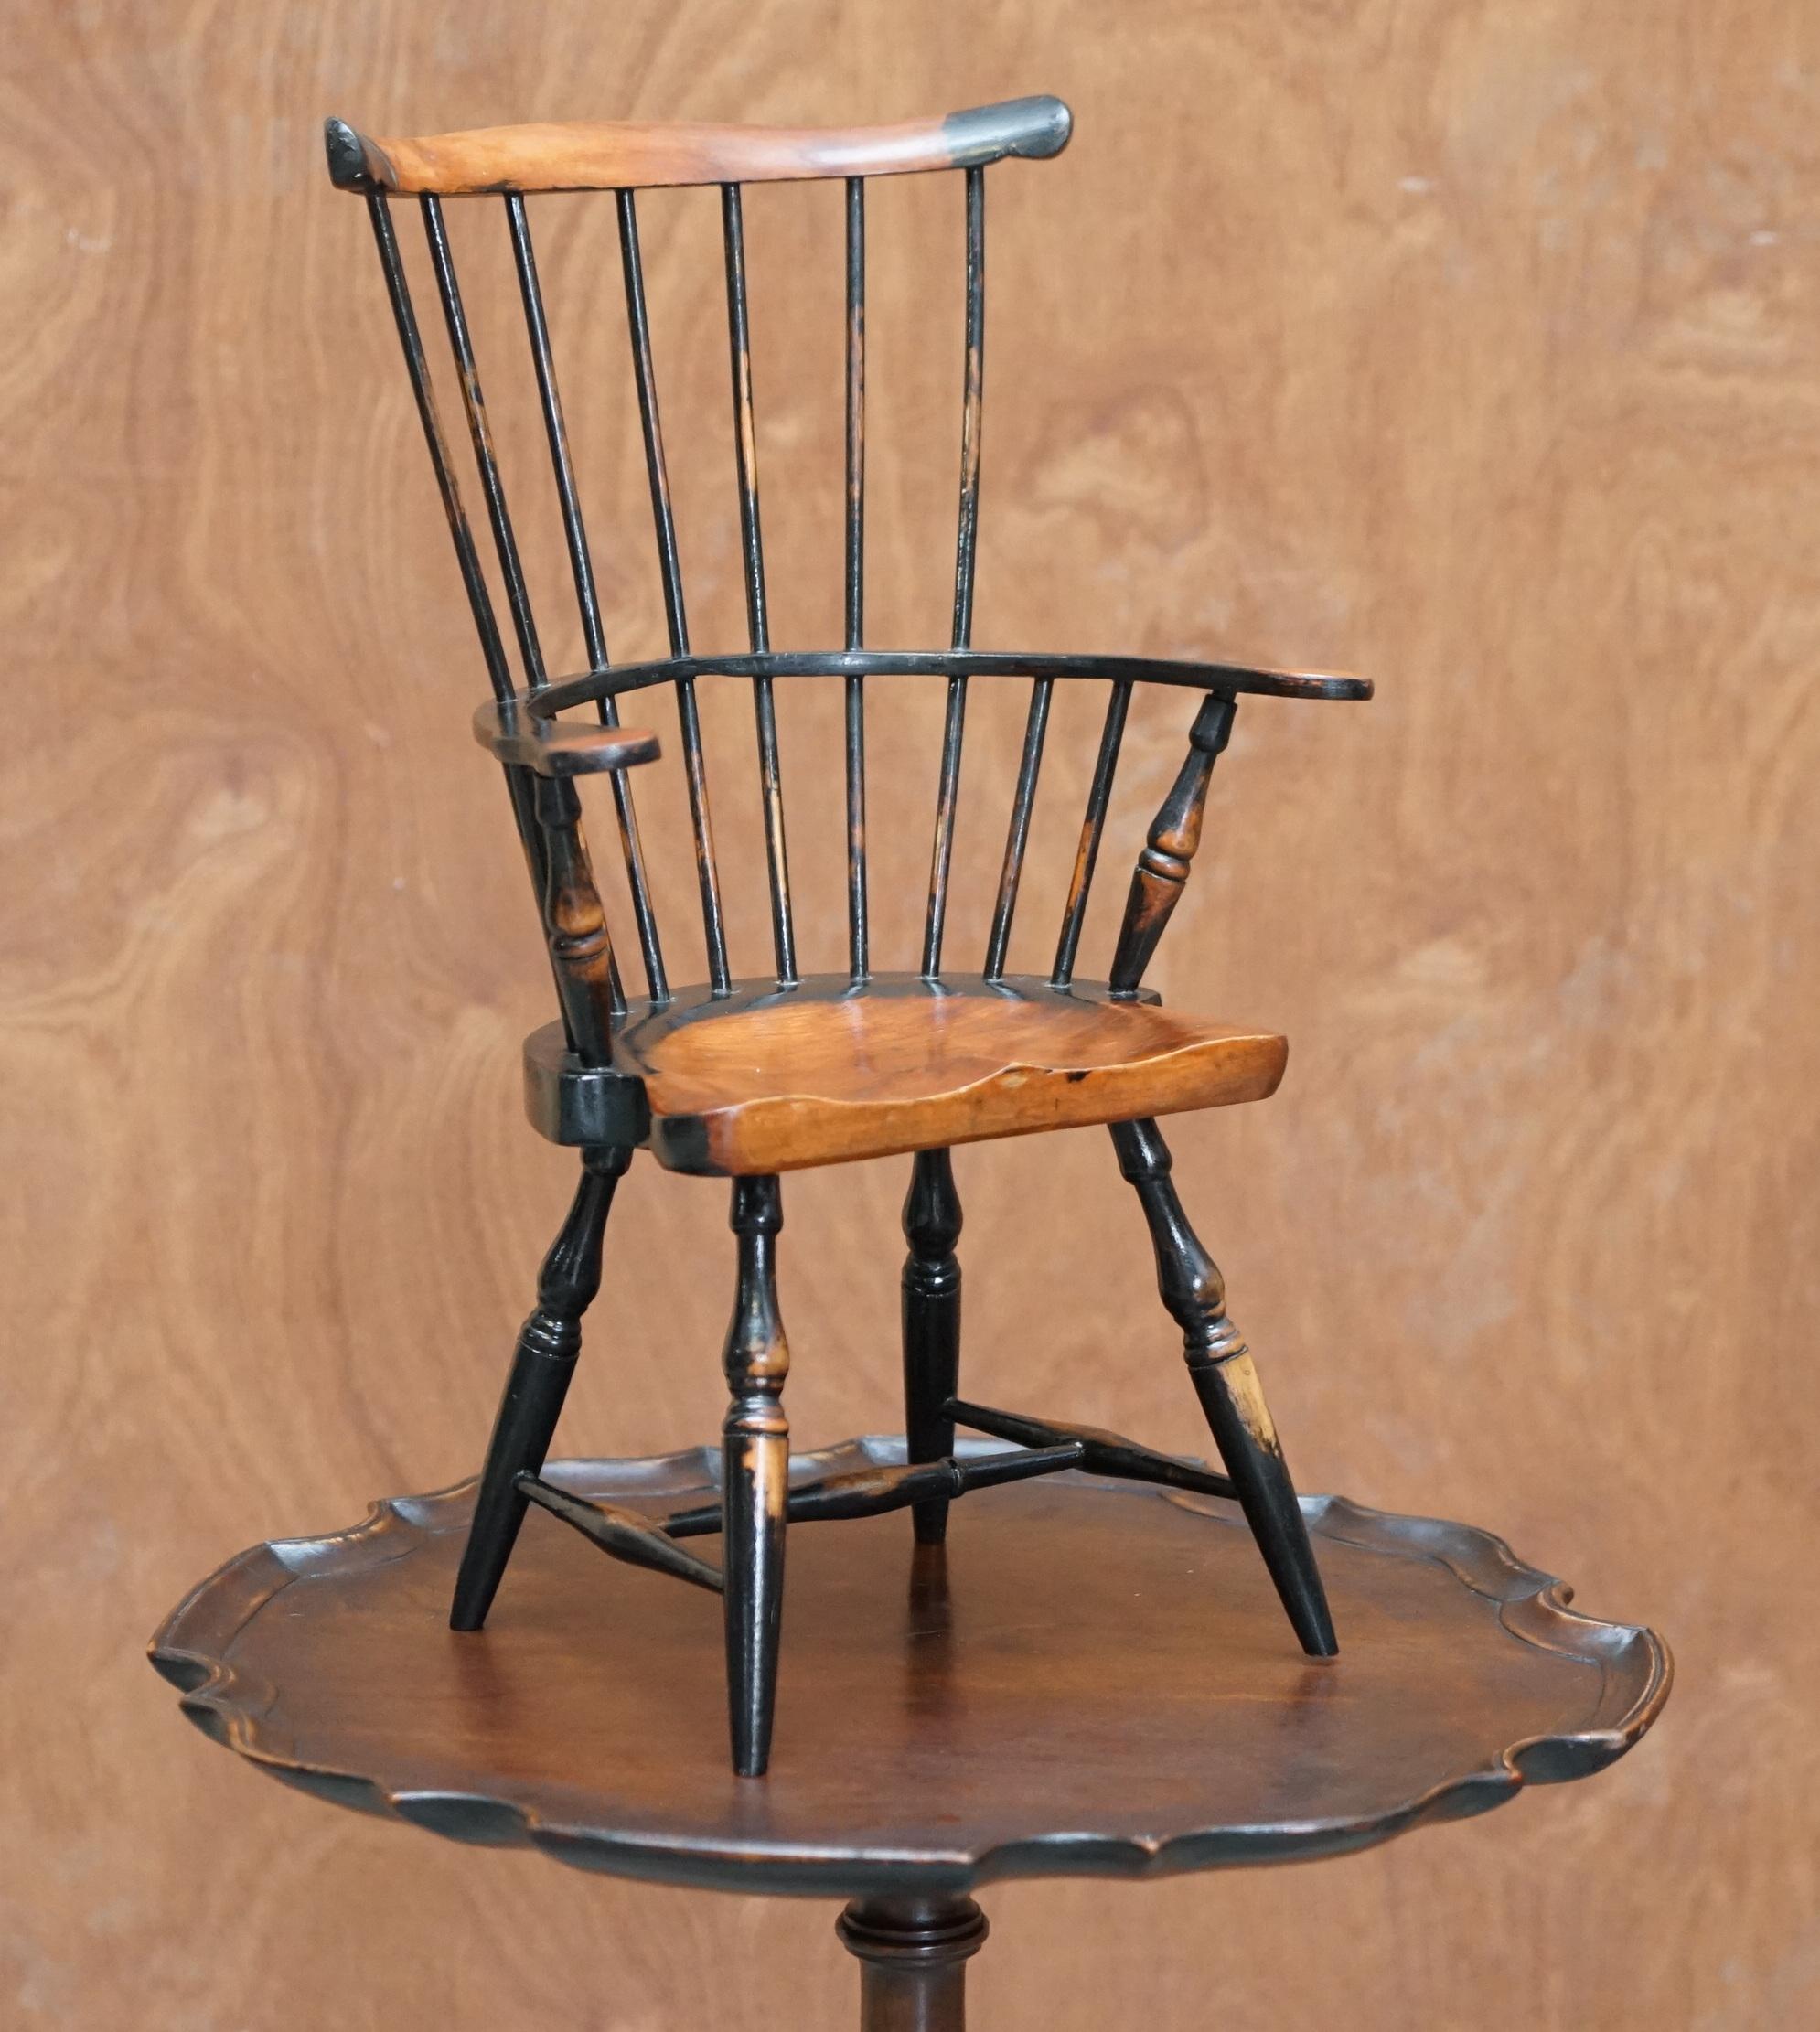 Nous sommes ravis d'offrir à la vente ce charmant fauteuil miniature antique de style Windsor à dossier peigne du 18e siècle. 

Il s'agit d'une belle pièce décorative, probablement un échantillon de vendeur ou quelque chose comme ça, mais